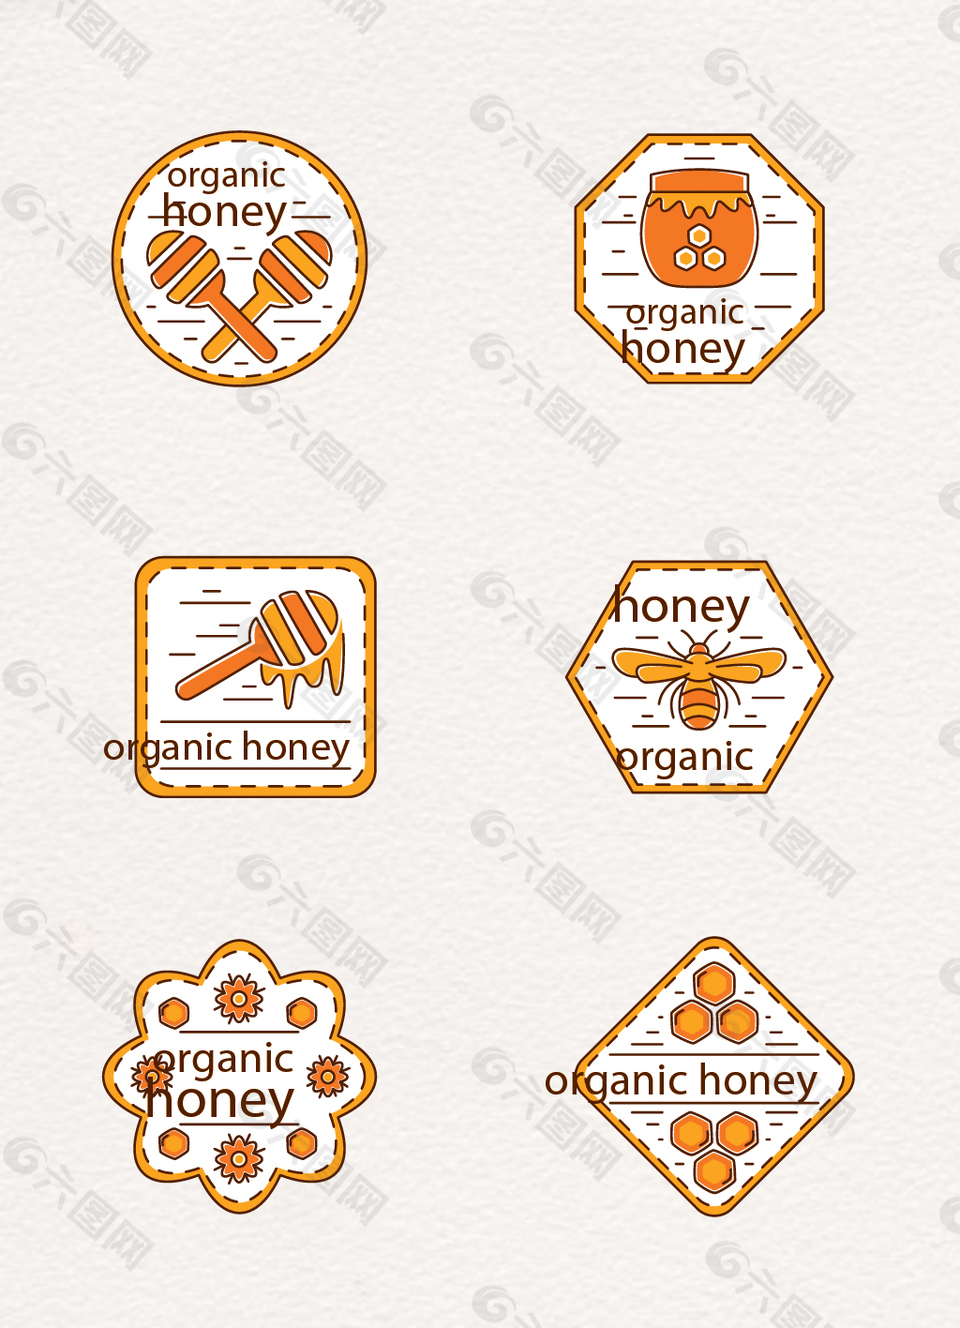 6款手绘有机蜂蜜标签矢量素材